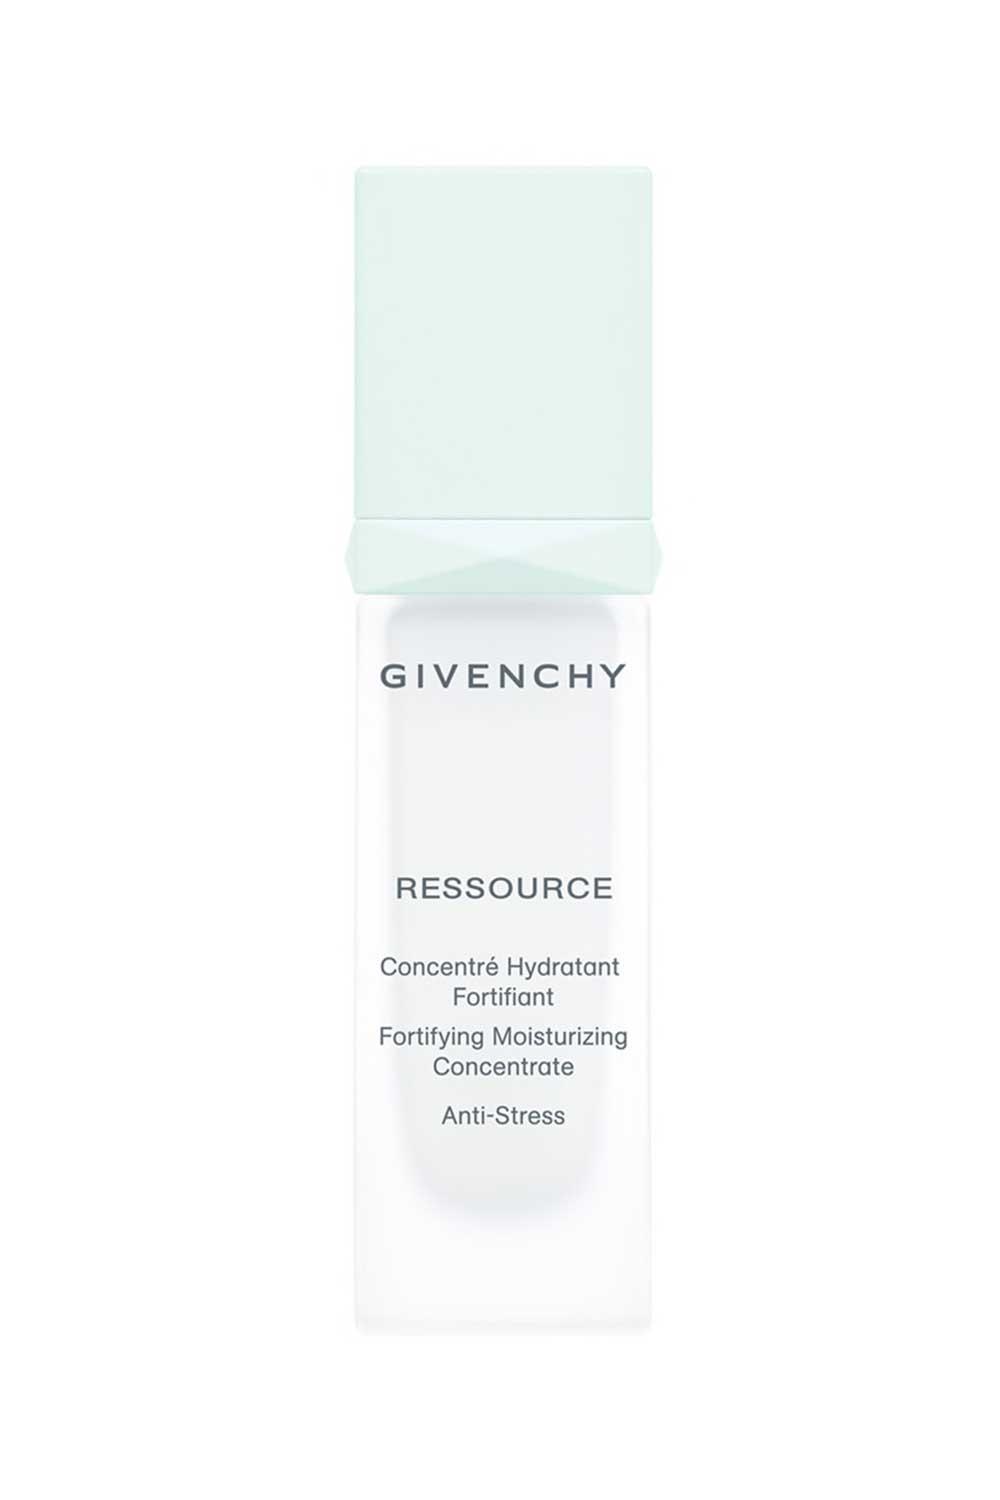 Giv5. Sérum Ressource Serum, Givenchy